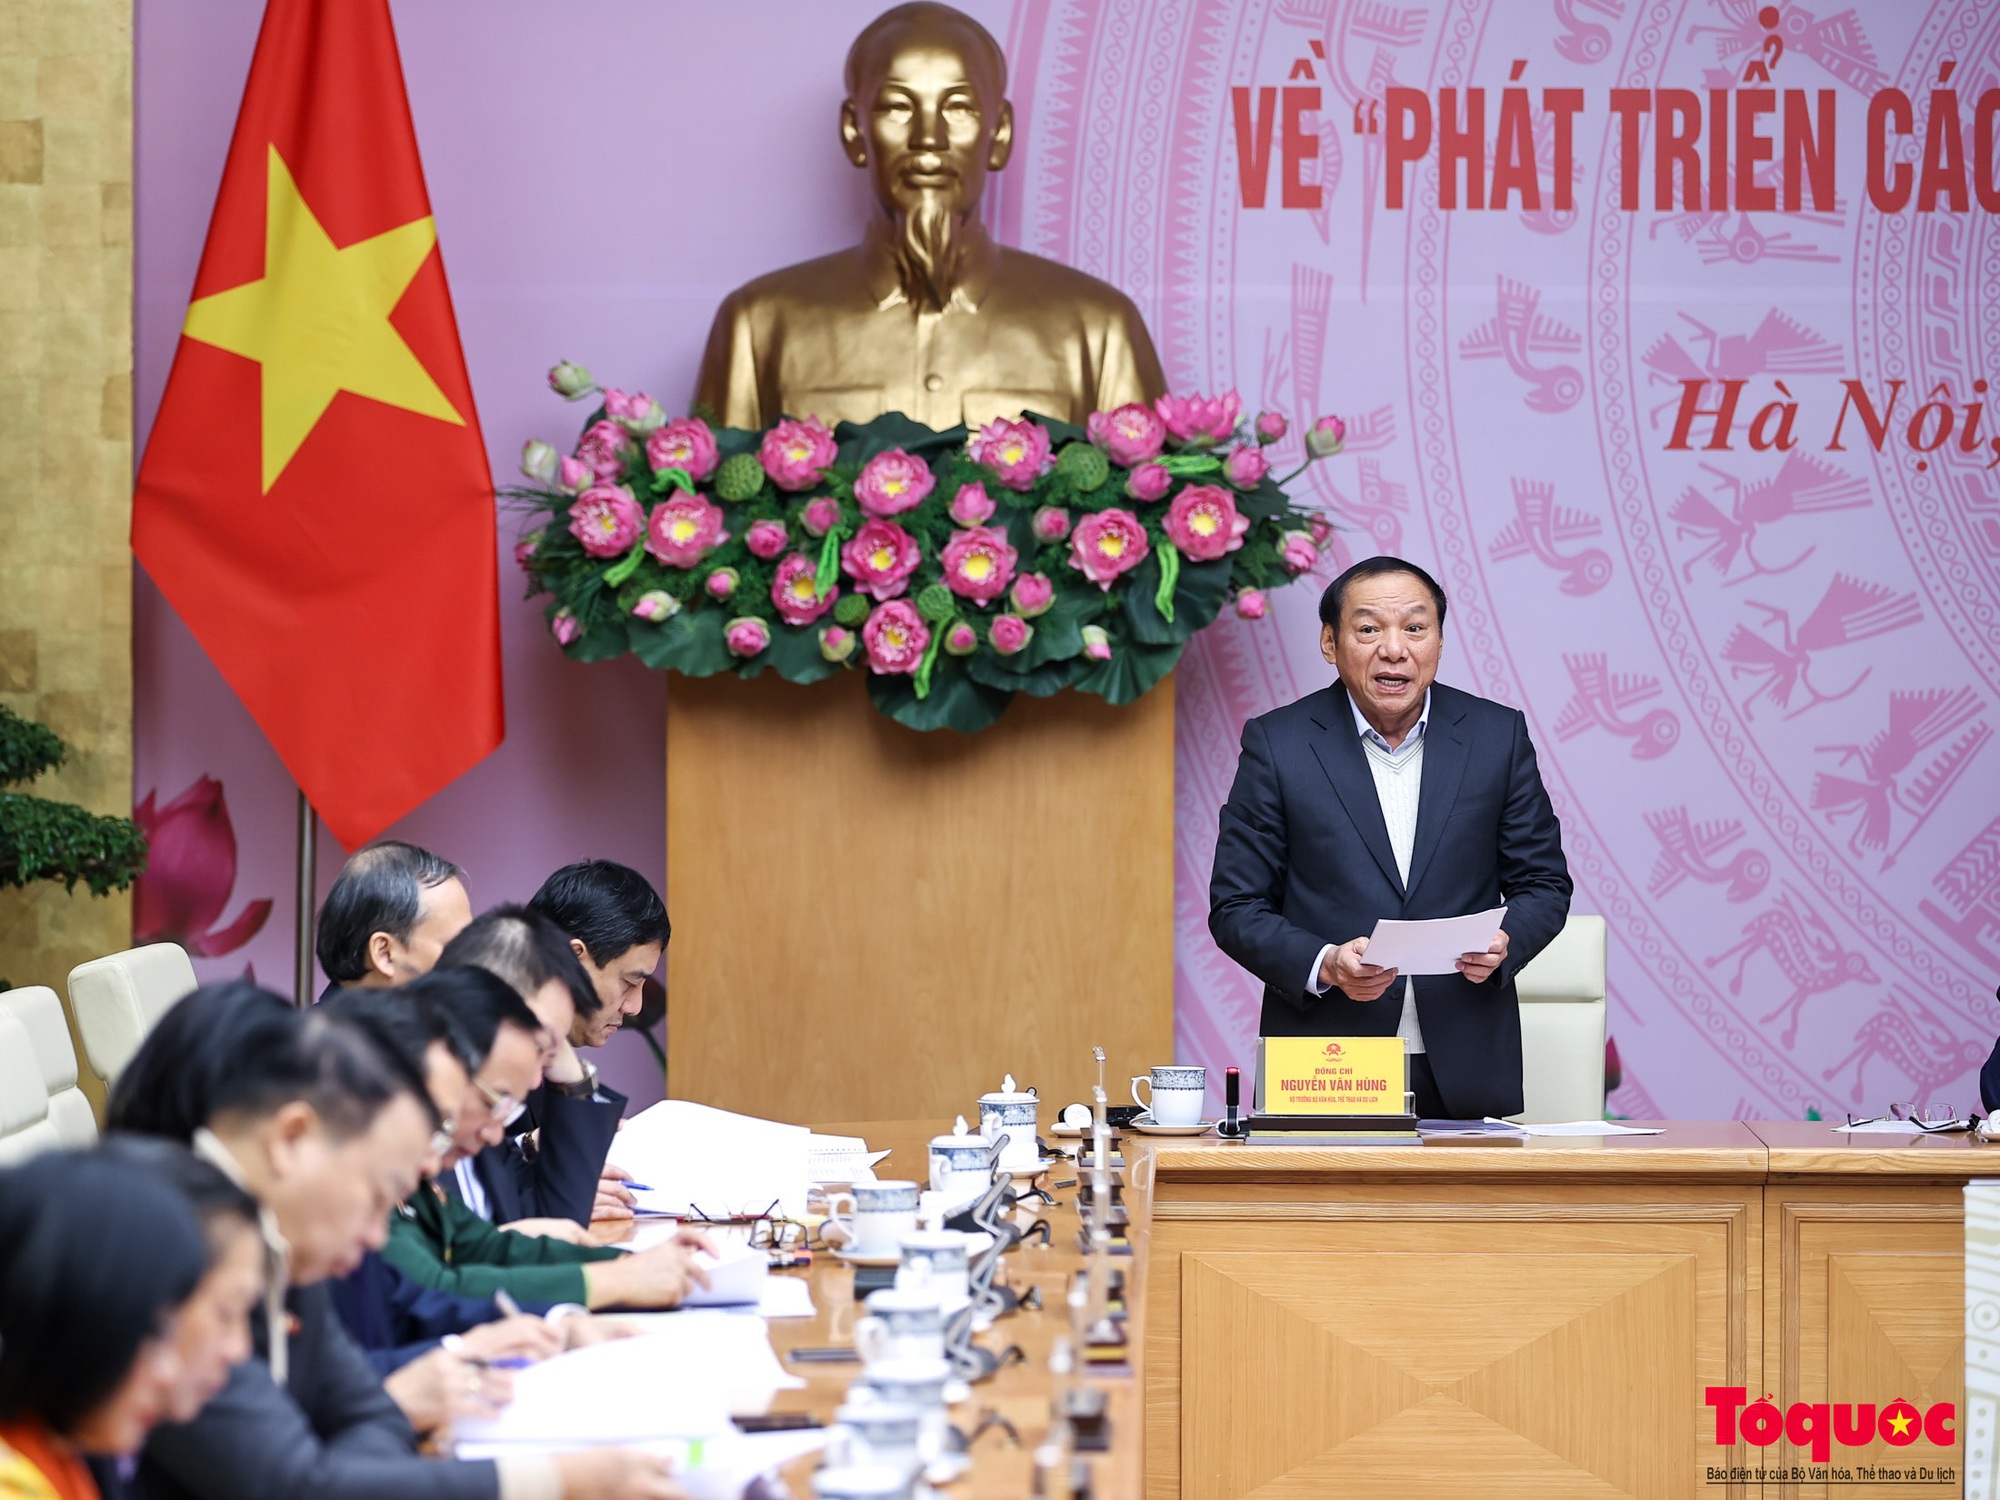 Chùm ảnh: Hội nghị toàn quốc về phát triển các ngành công nghiệp văn hóa Việt Nam - Ảnh 3.